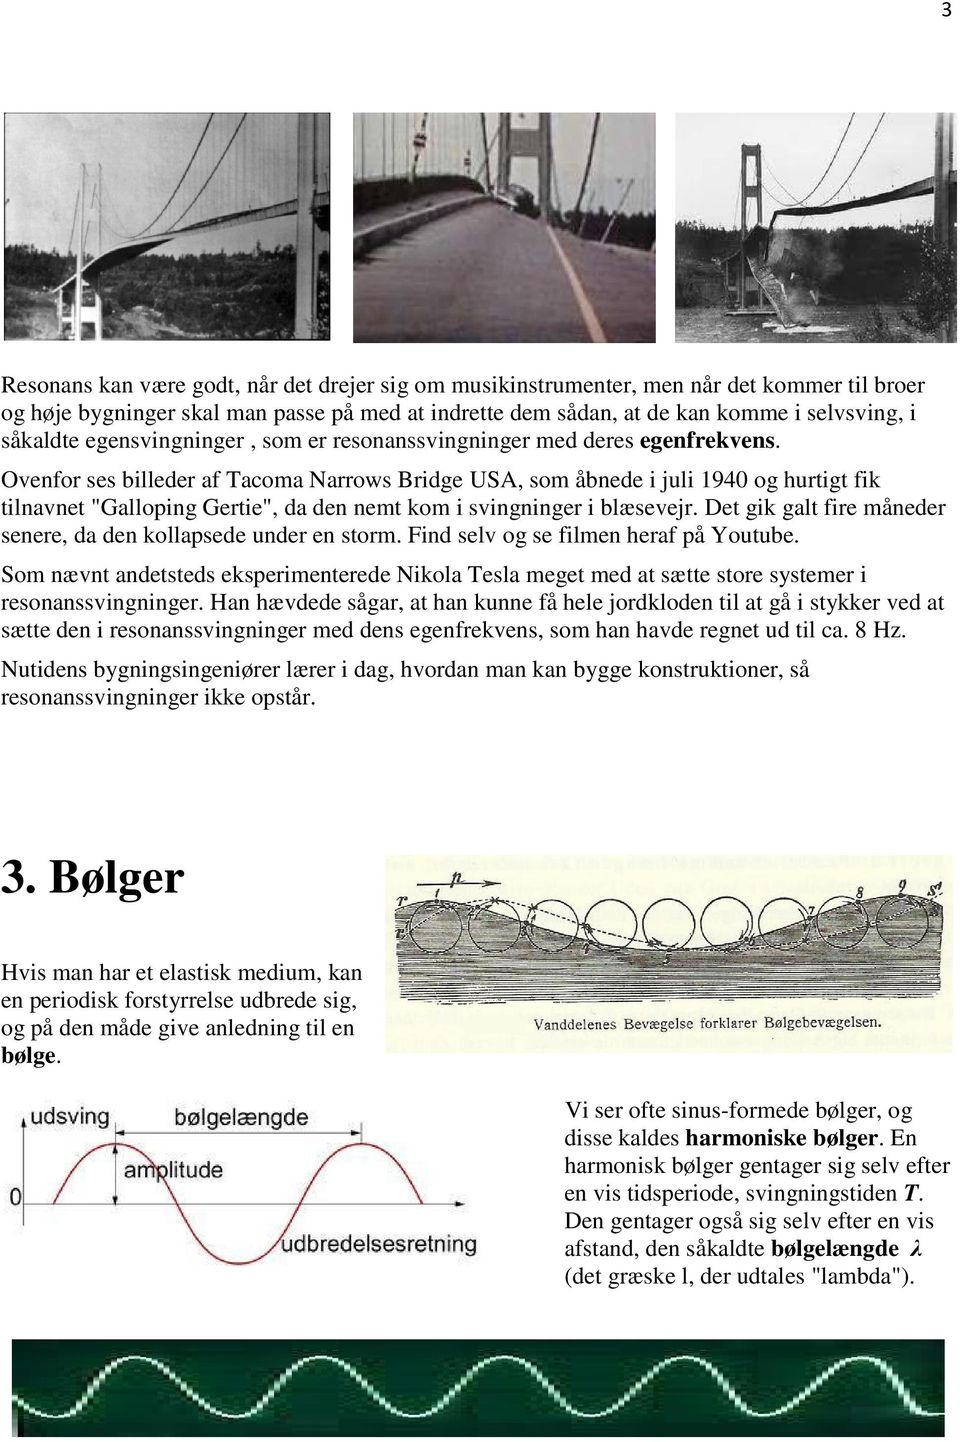 Ovenfor ses billeder af Tacoma Narrows Bridge USA, som åbnede i juli 1940 og hurtigt fik tilnavnet "Galloping Gertie", da den nemt kom i svingninger i blæsevejr.